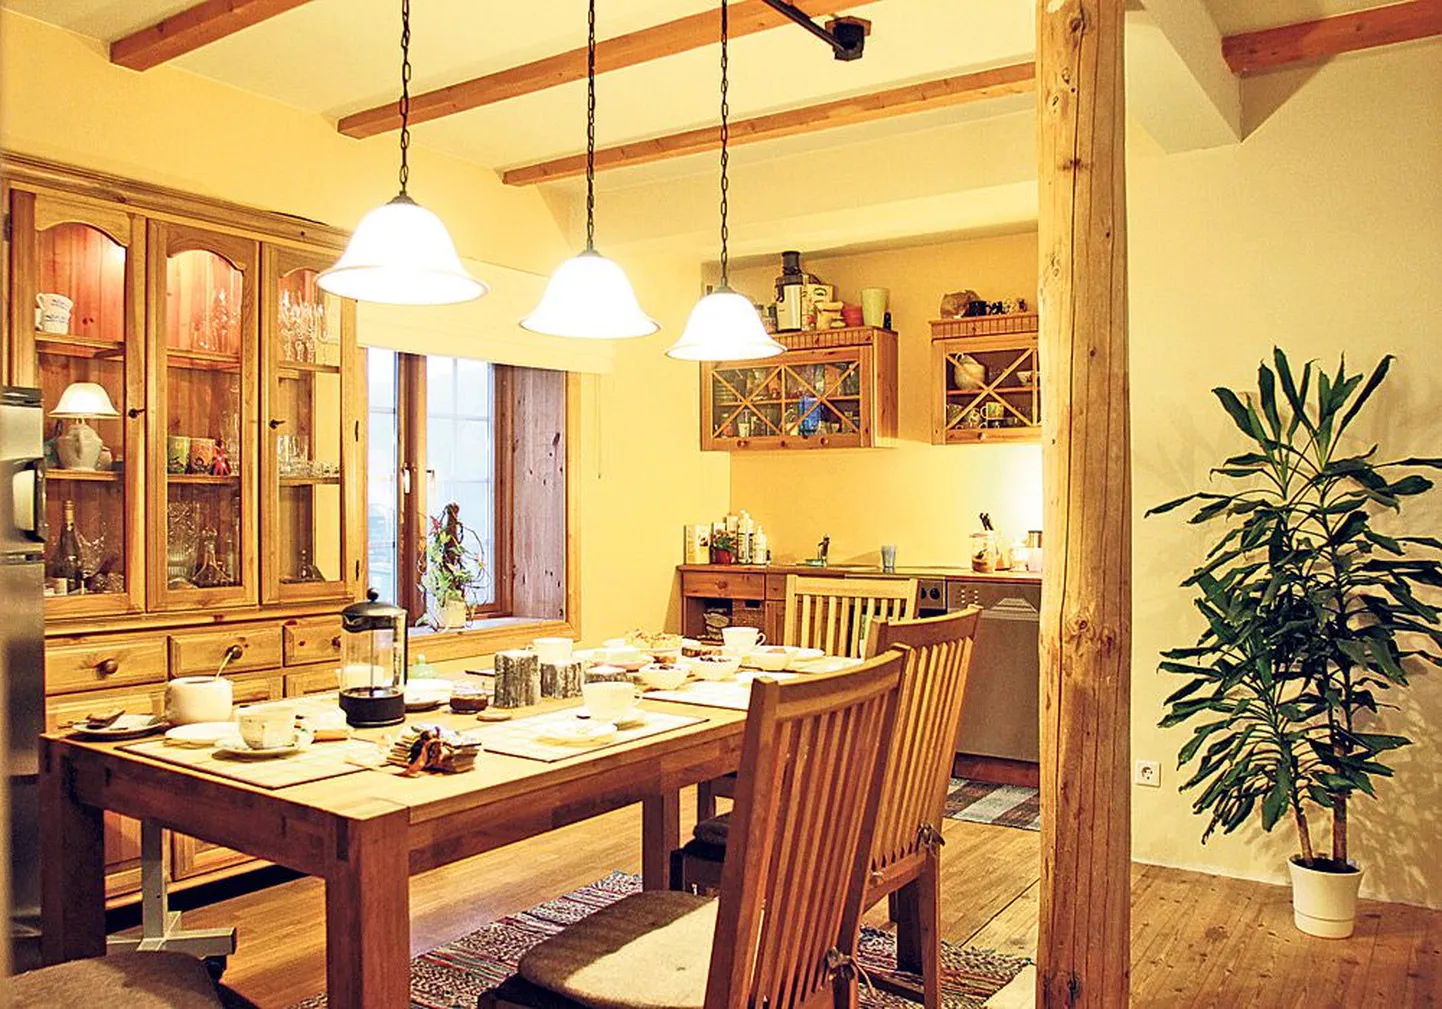 Köök on kodu süda: suure laua ümber arutatakse omade vahel päevasündmusi ja võõrustatakse ka külalisi.